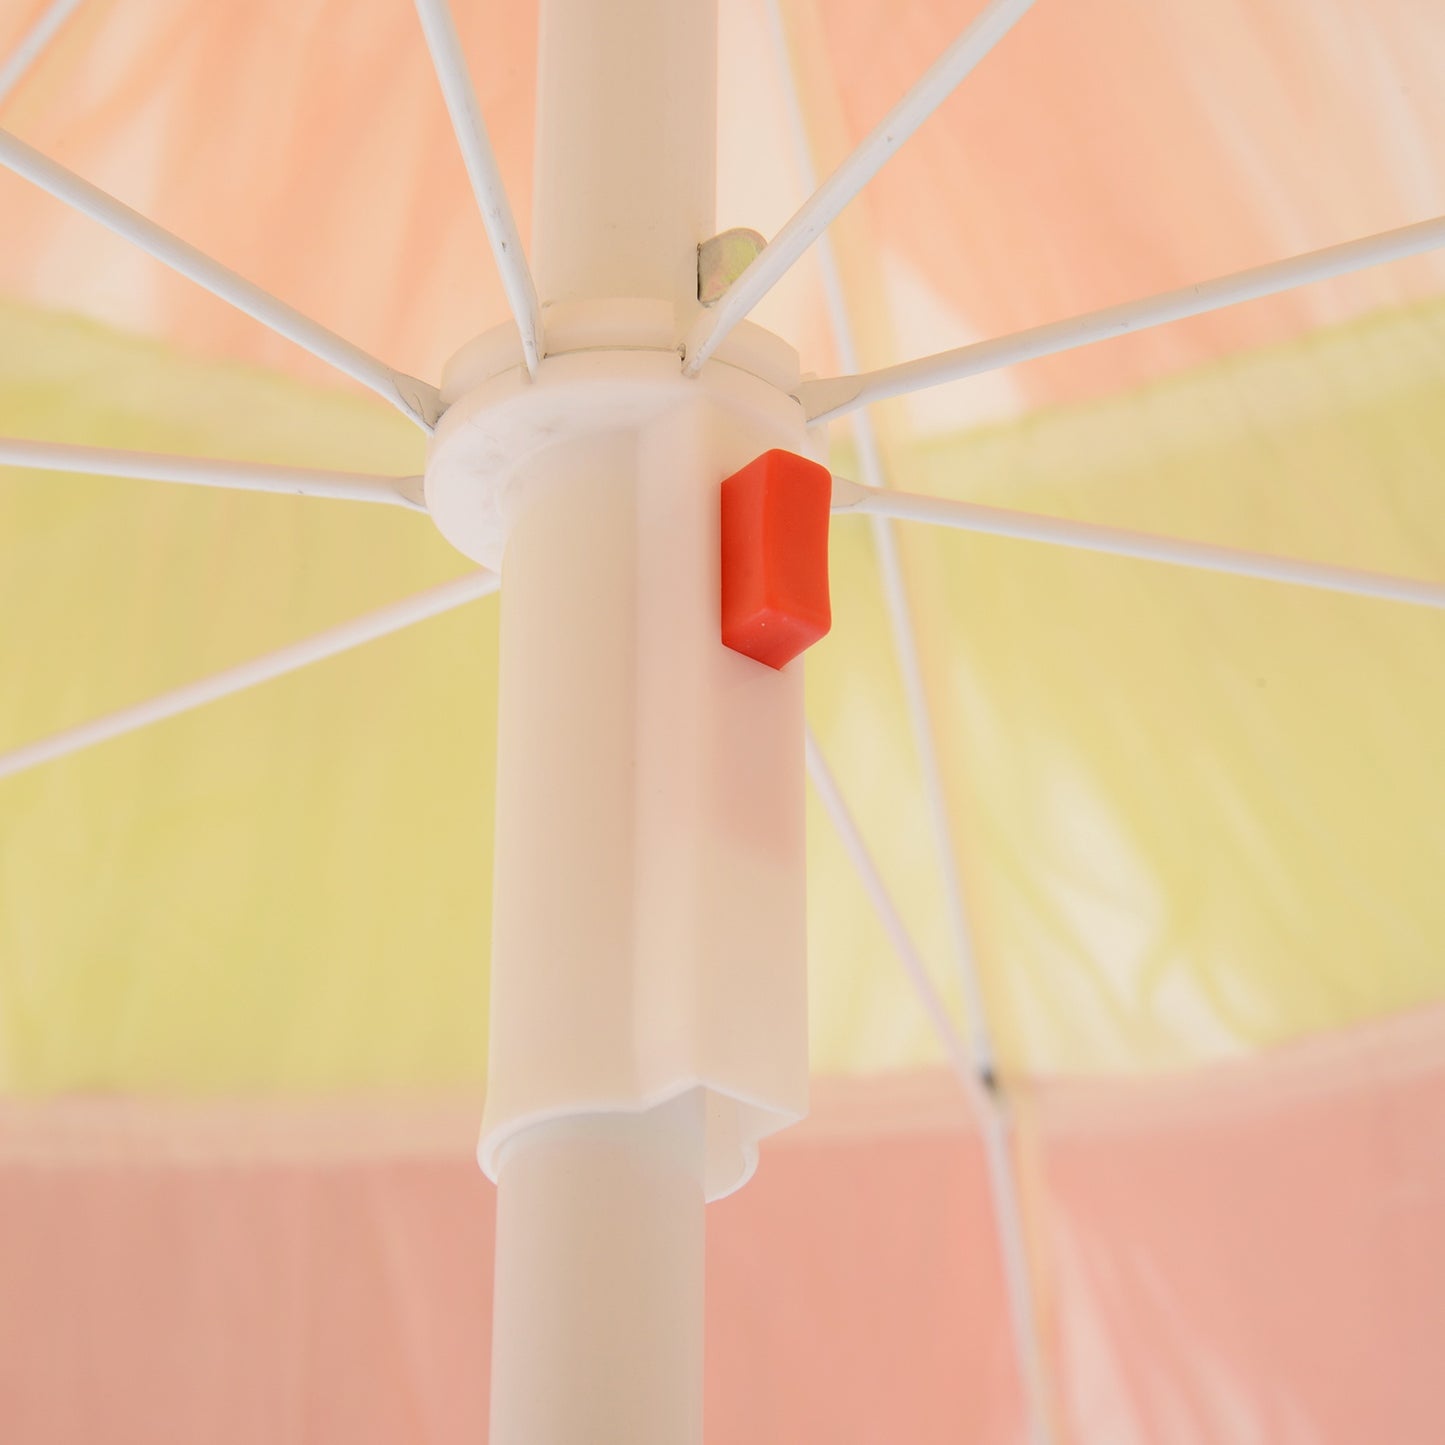 Nancy's Mora Parasol - Parasol de fête - Hawaï - Protection solaire - Abat-jour - Jaune - Rouge - Ø 160 cm